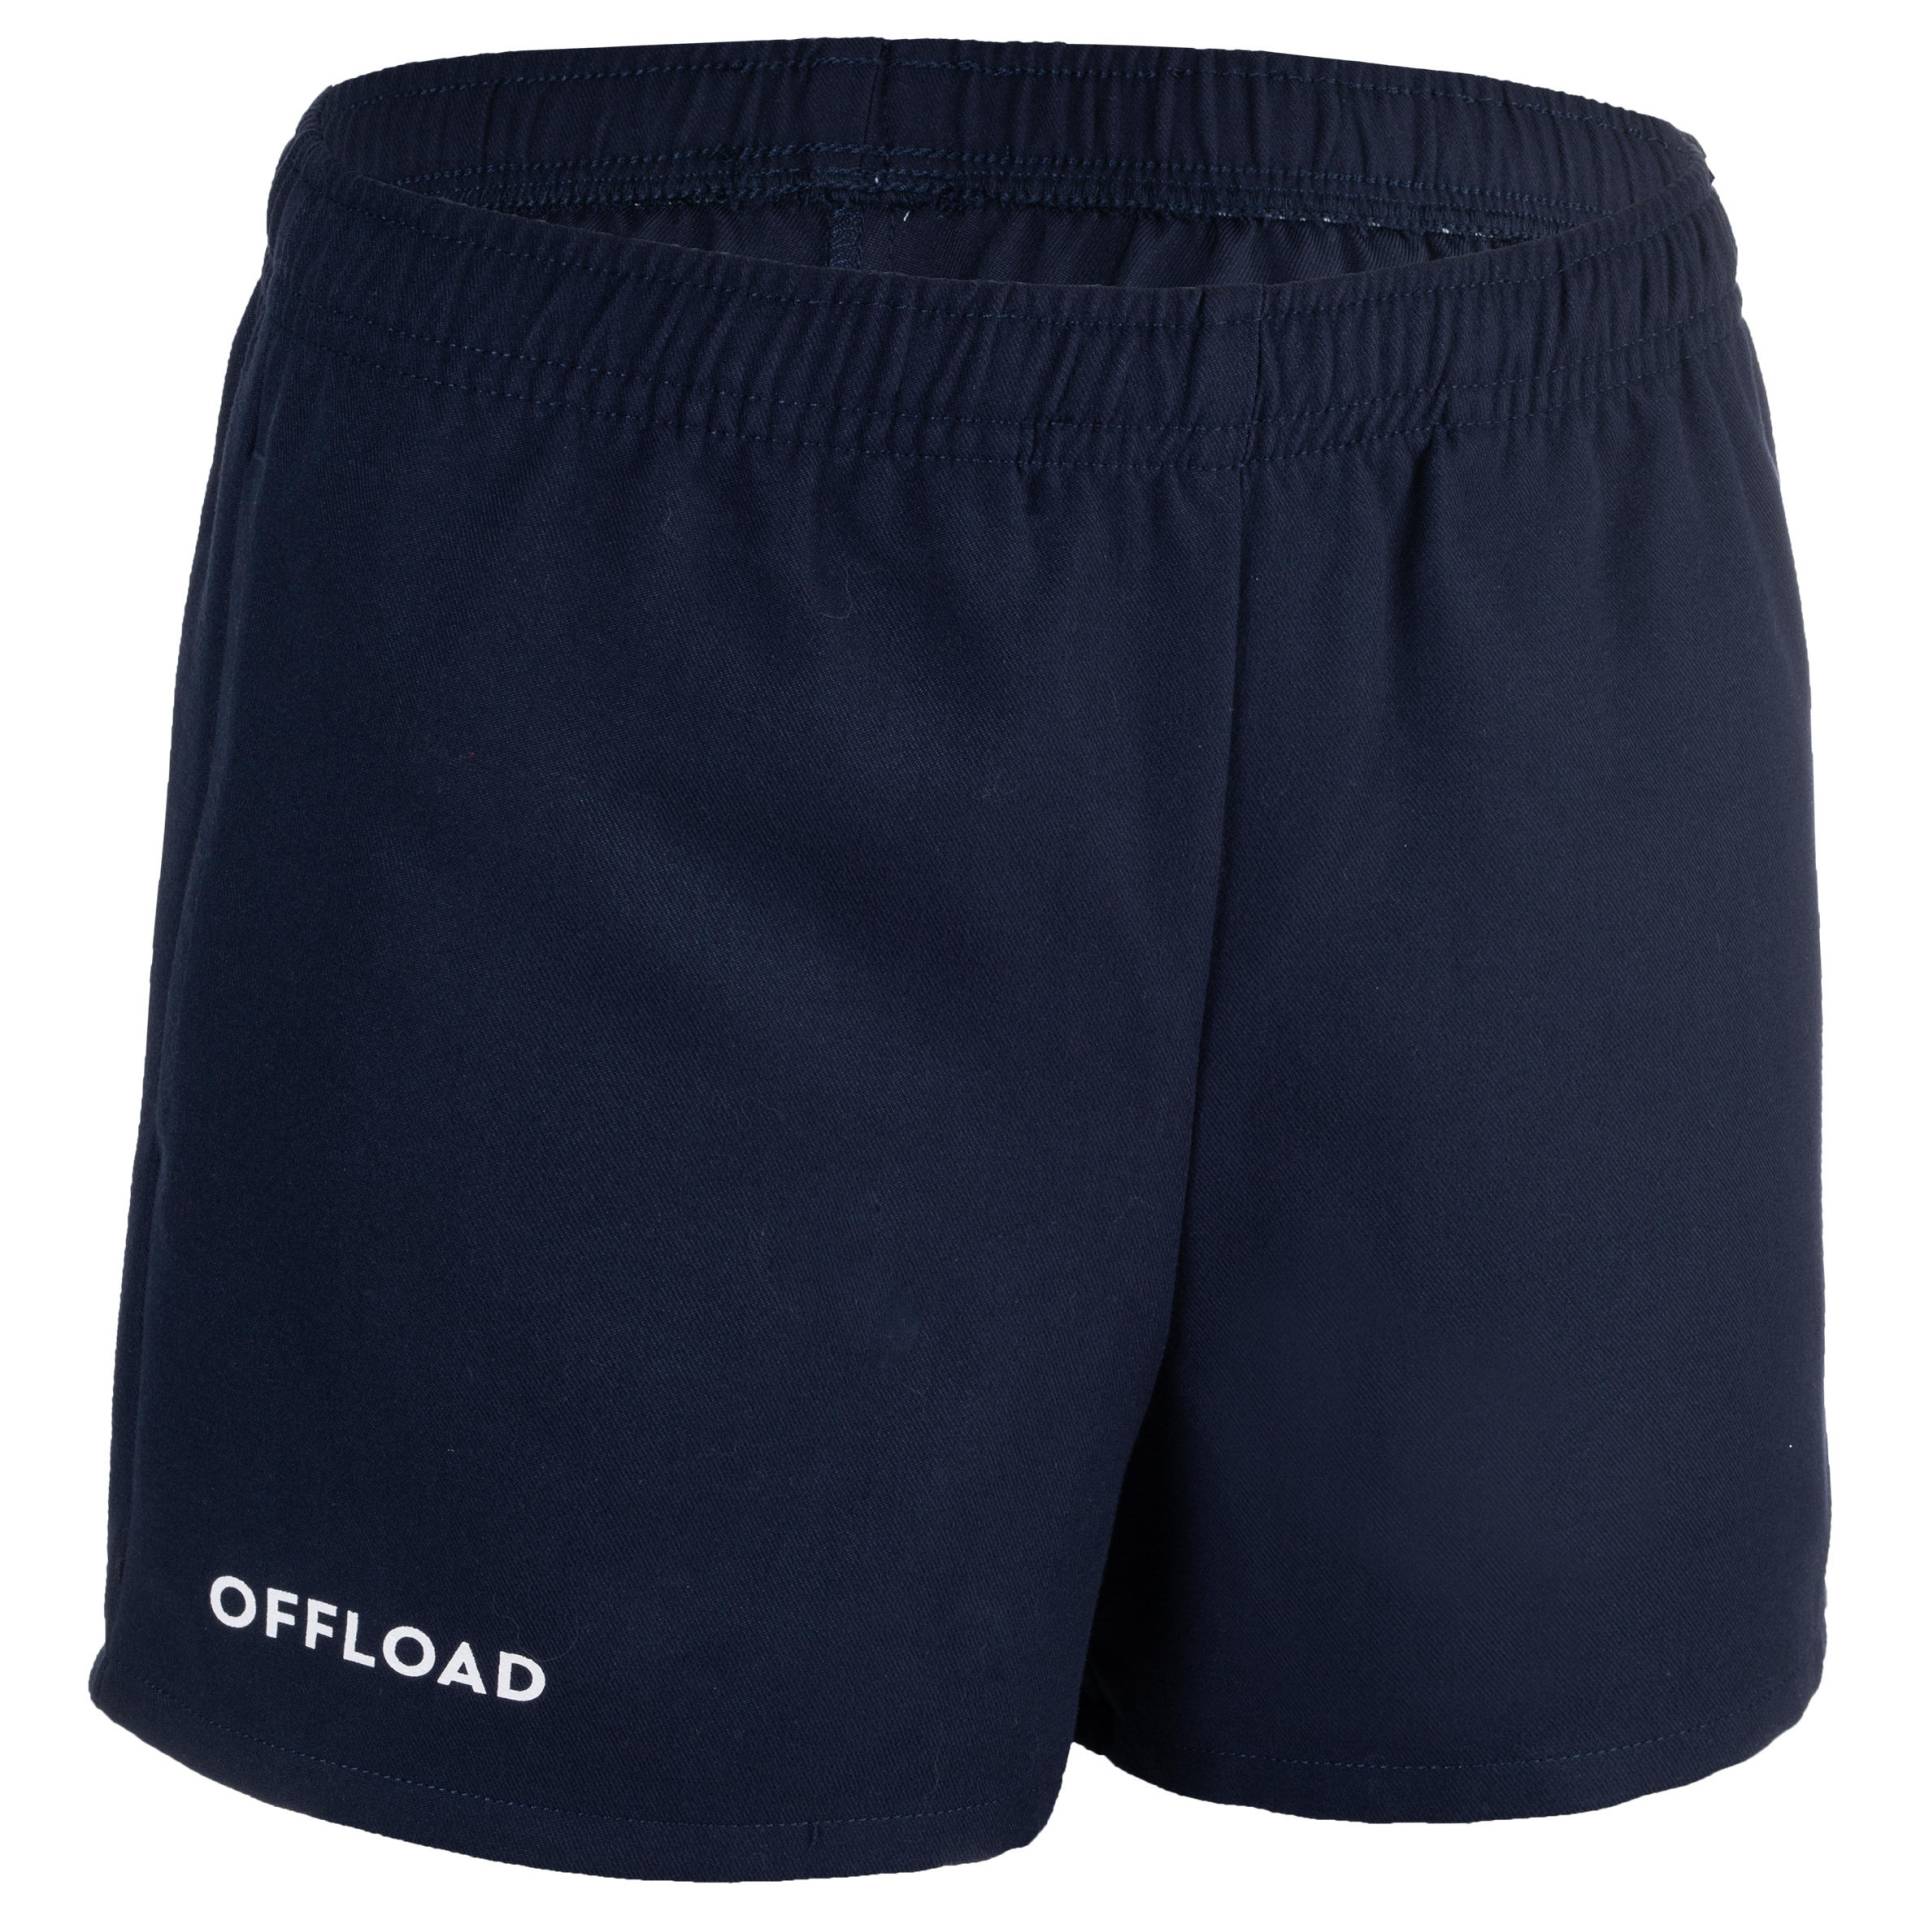 Kinder Rugby Shorts mit Hosentaschen - R100 blau von OFFLOAD